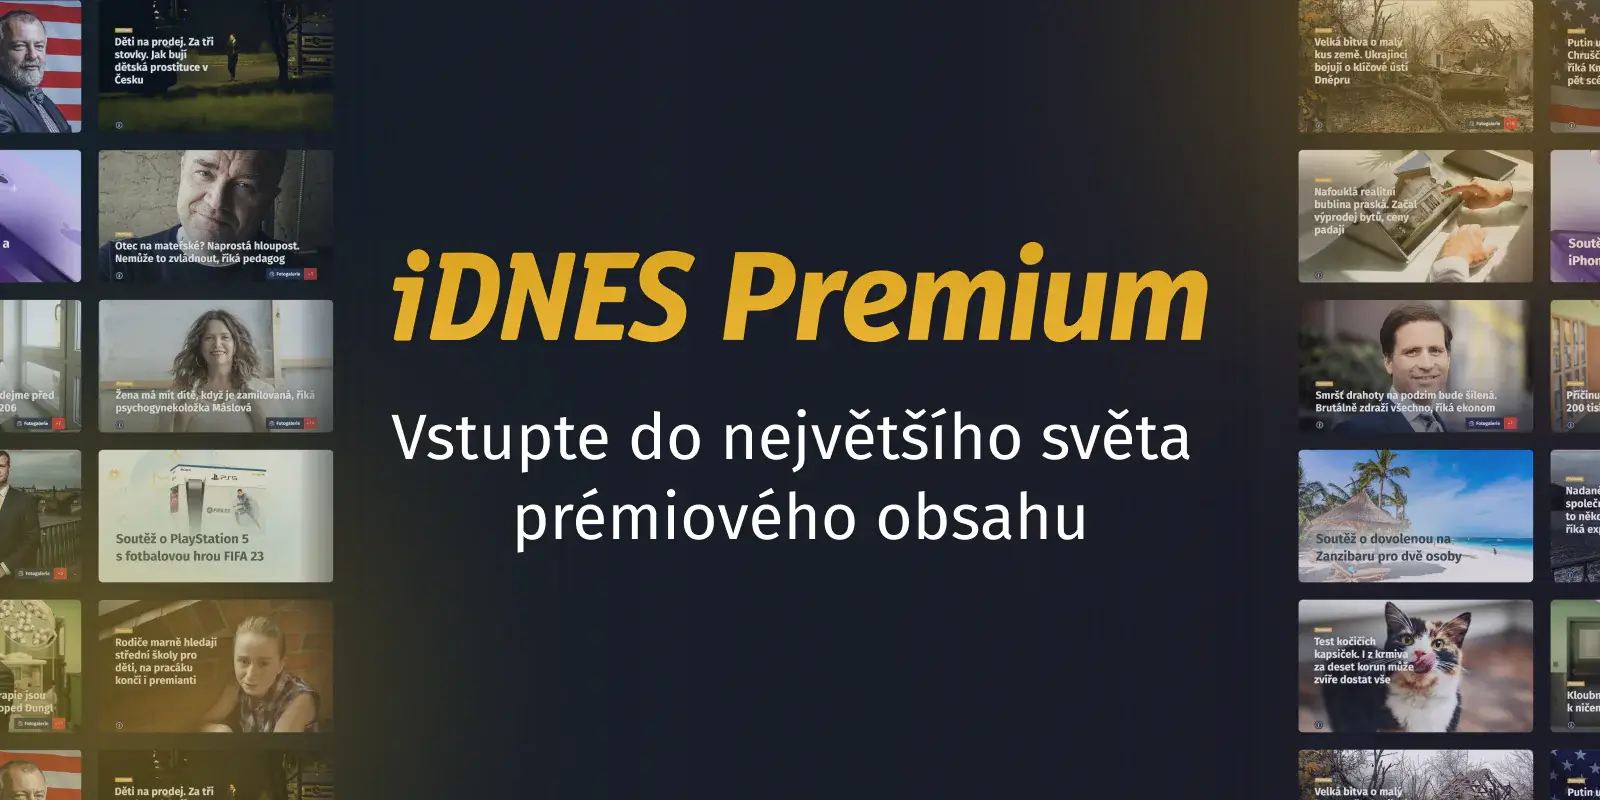 Výhody předplatného iDnes Premium popsané v obrázku.